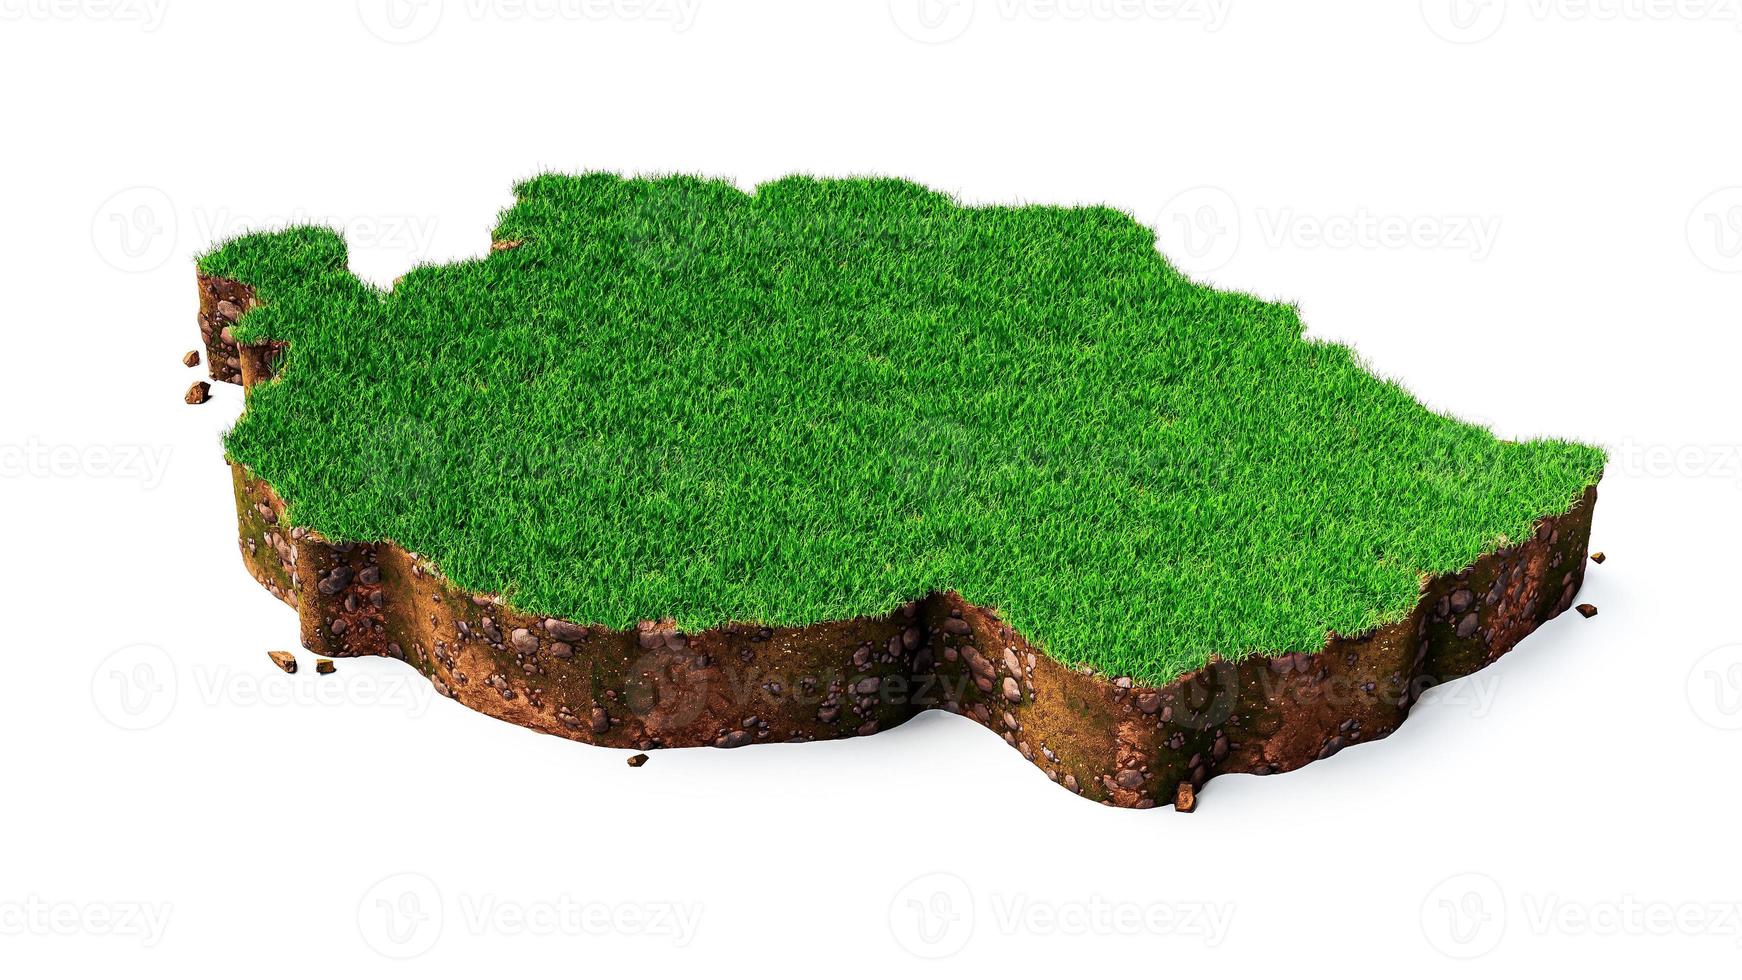 carte de la tanzanie illustration 3d de la texture de l'herbe et du sol photo